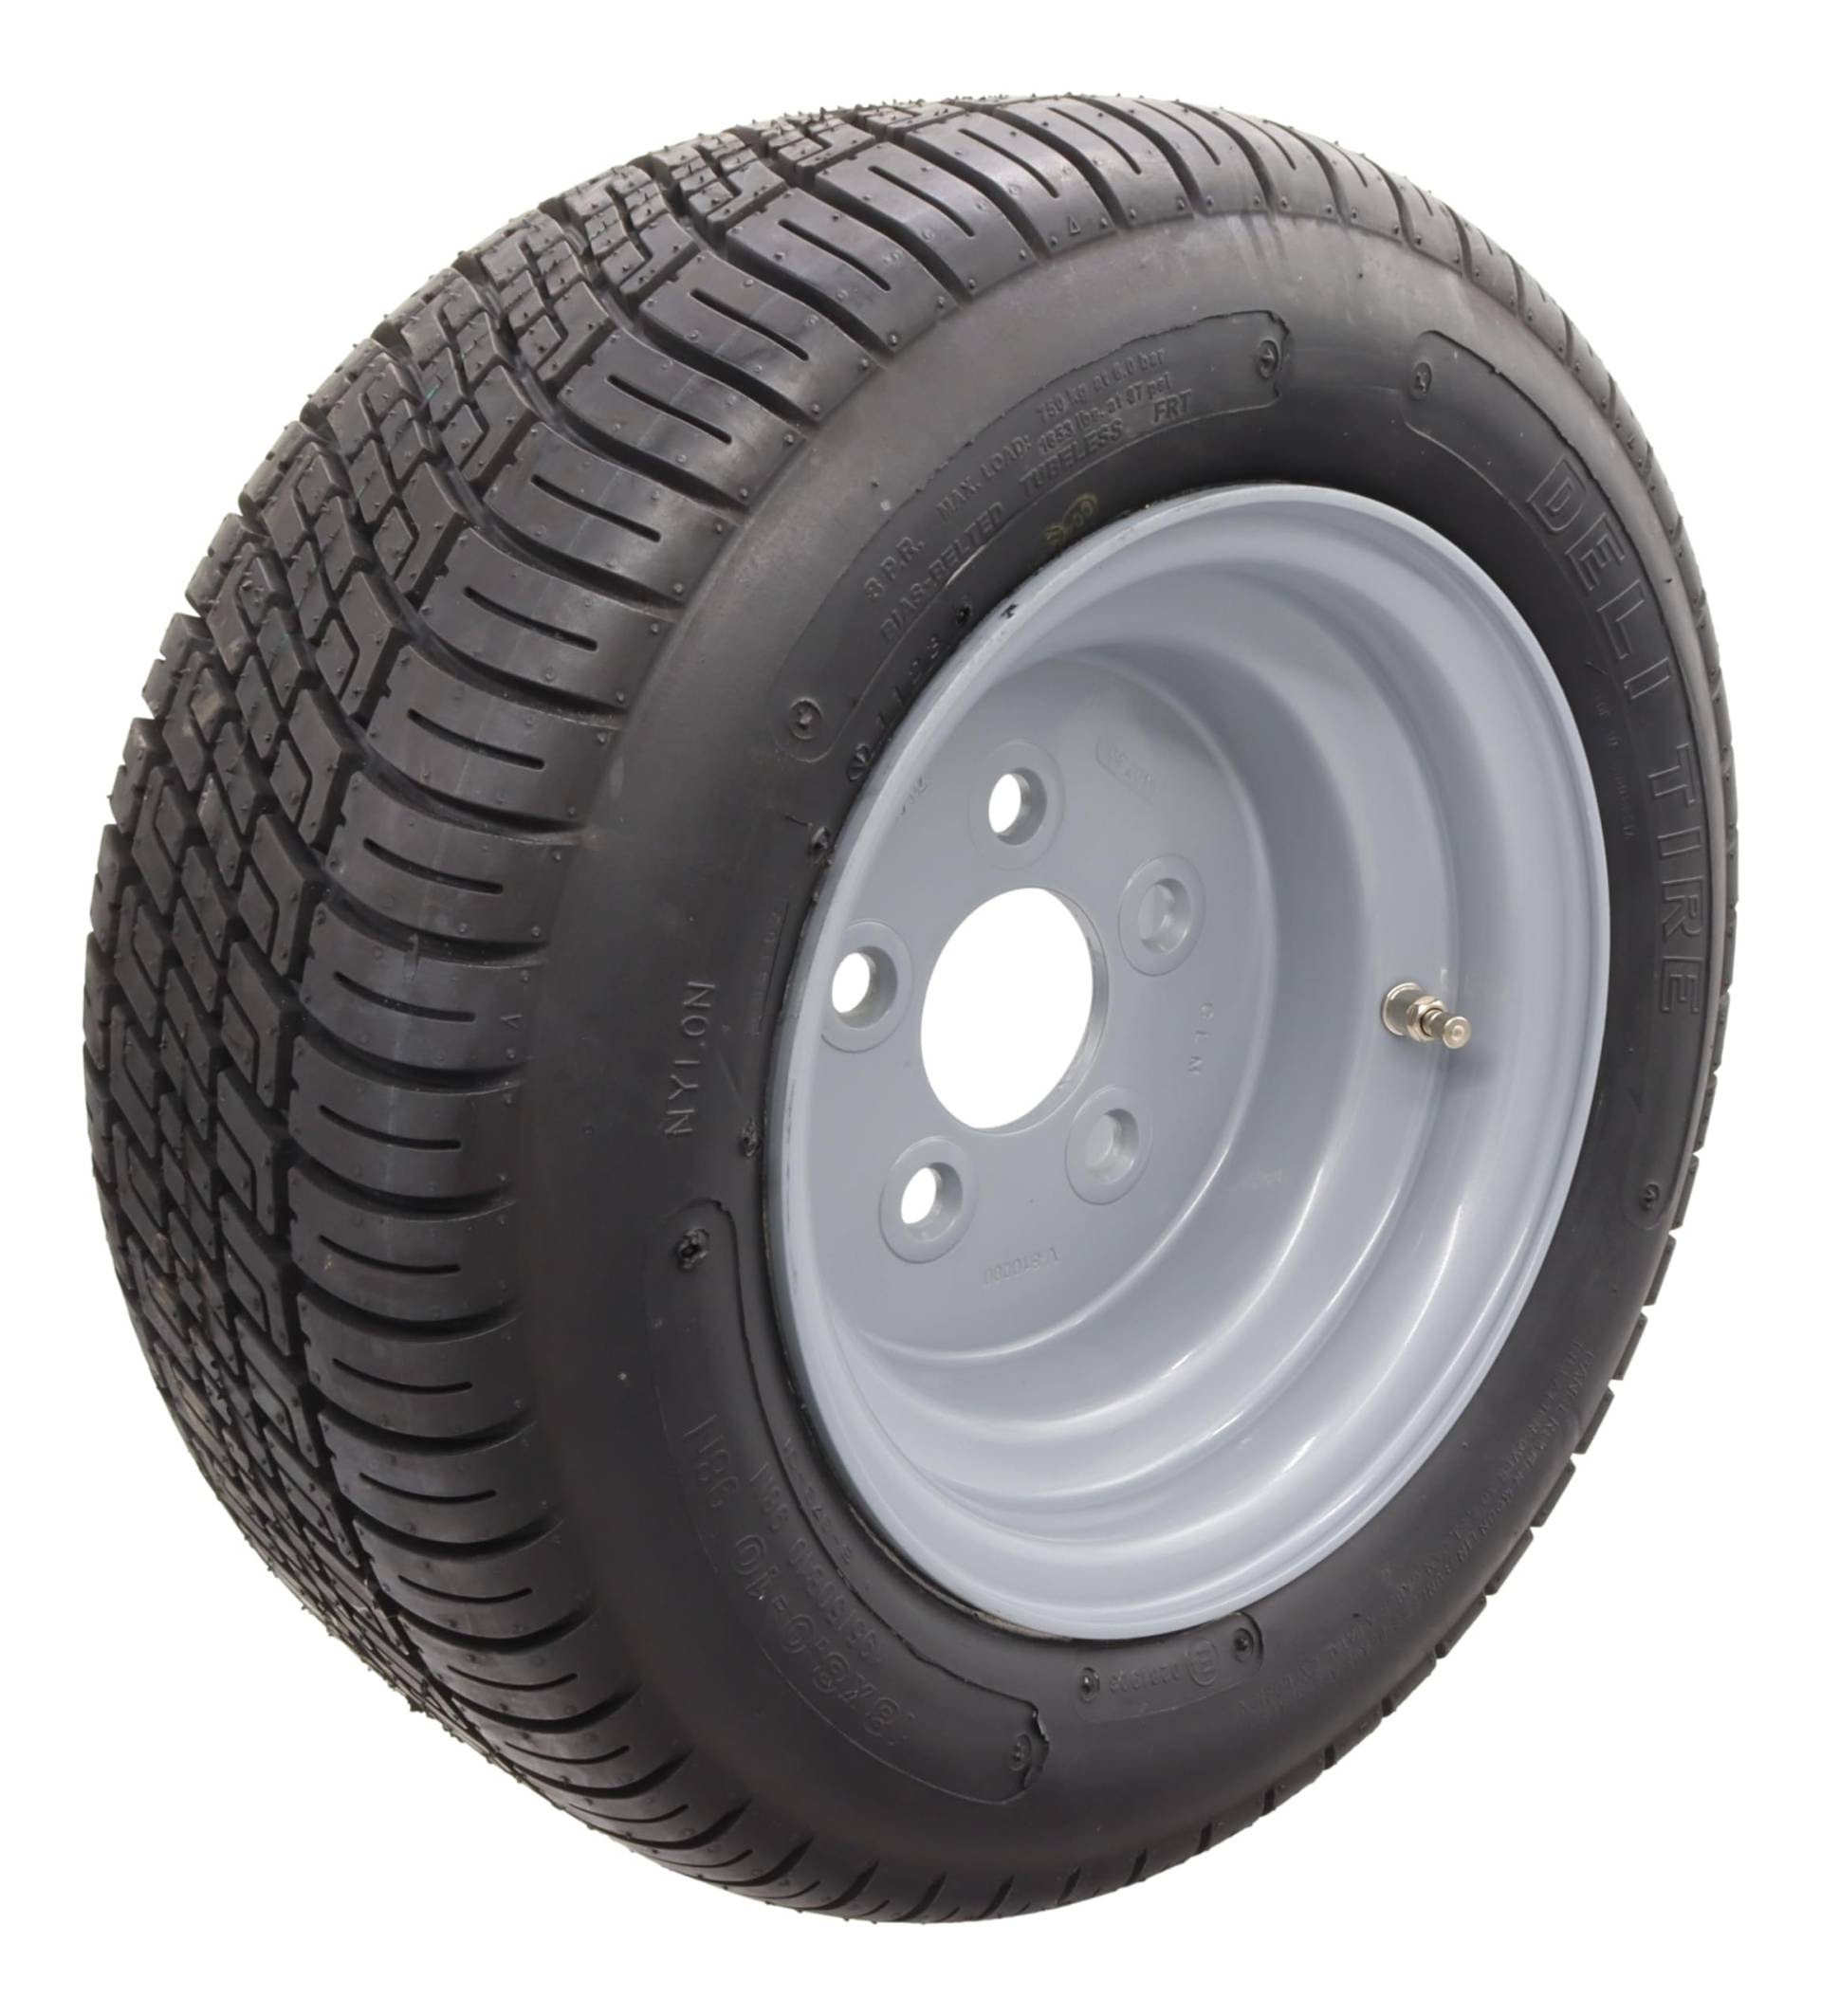 Komplettrad Reifen 195/50 B10 18x8.0-10 5 x 112 ET-4 750kg 6.00x10 Anhänger Trailer Deli Tire von trailer parts4u